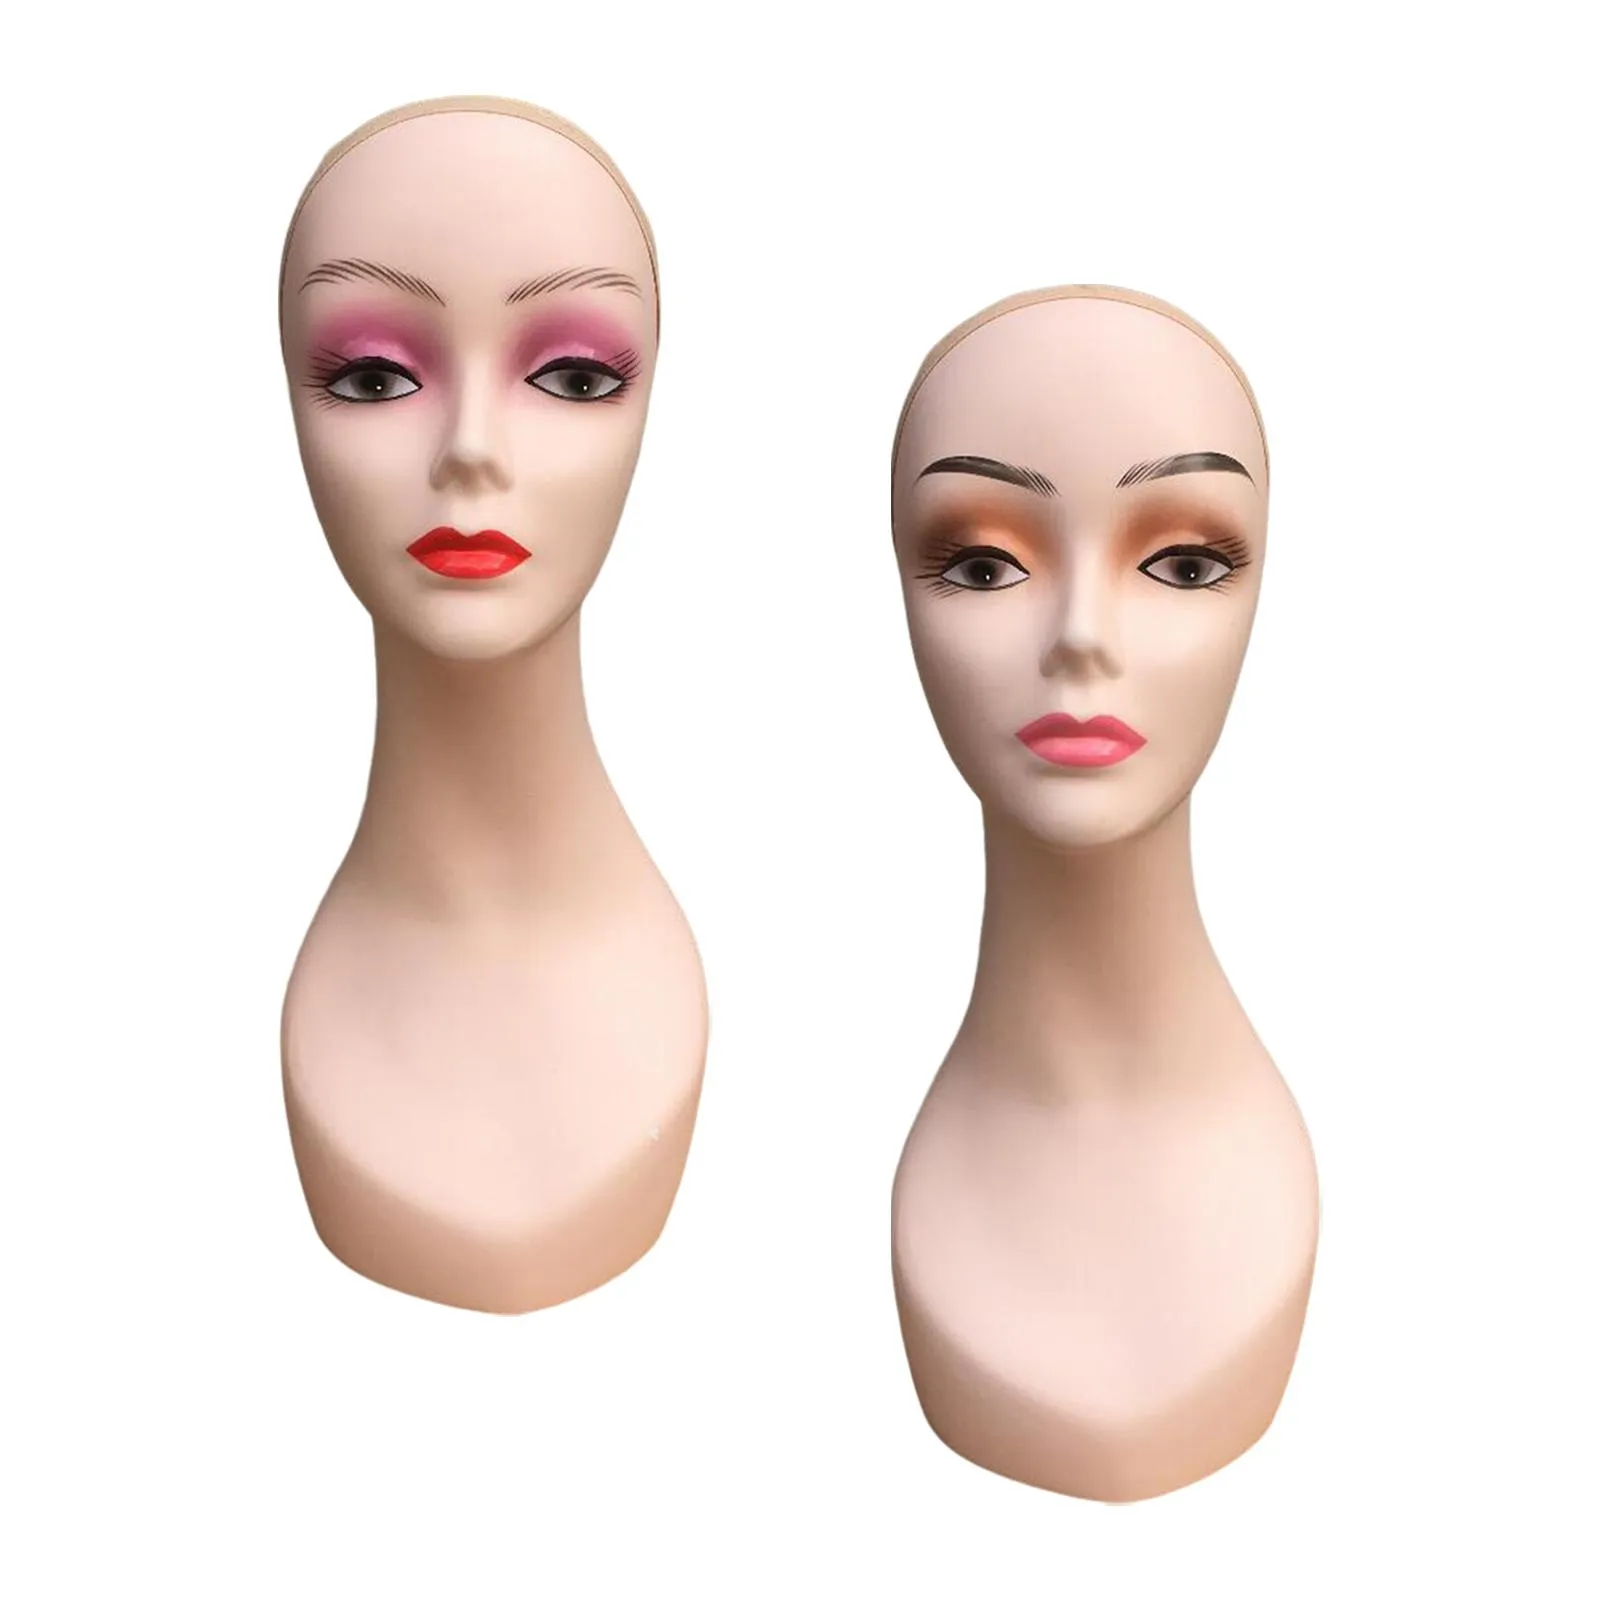 Vrouwen mannequin hoofd duurzame vrouwelijke manikin pruik hoofdstandaard voor hoofddoekjes hoofddeksels met glazen kettingen met sieraden